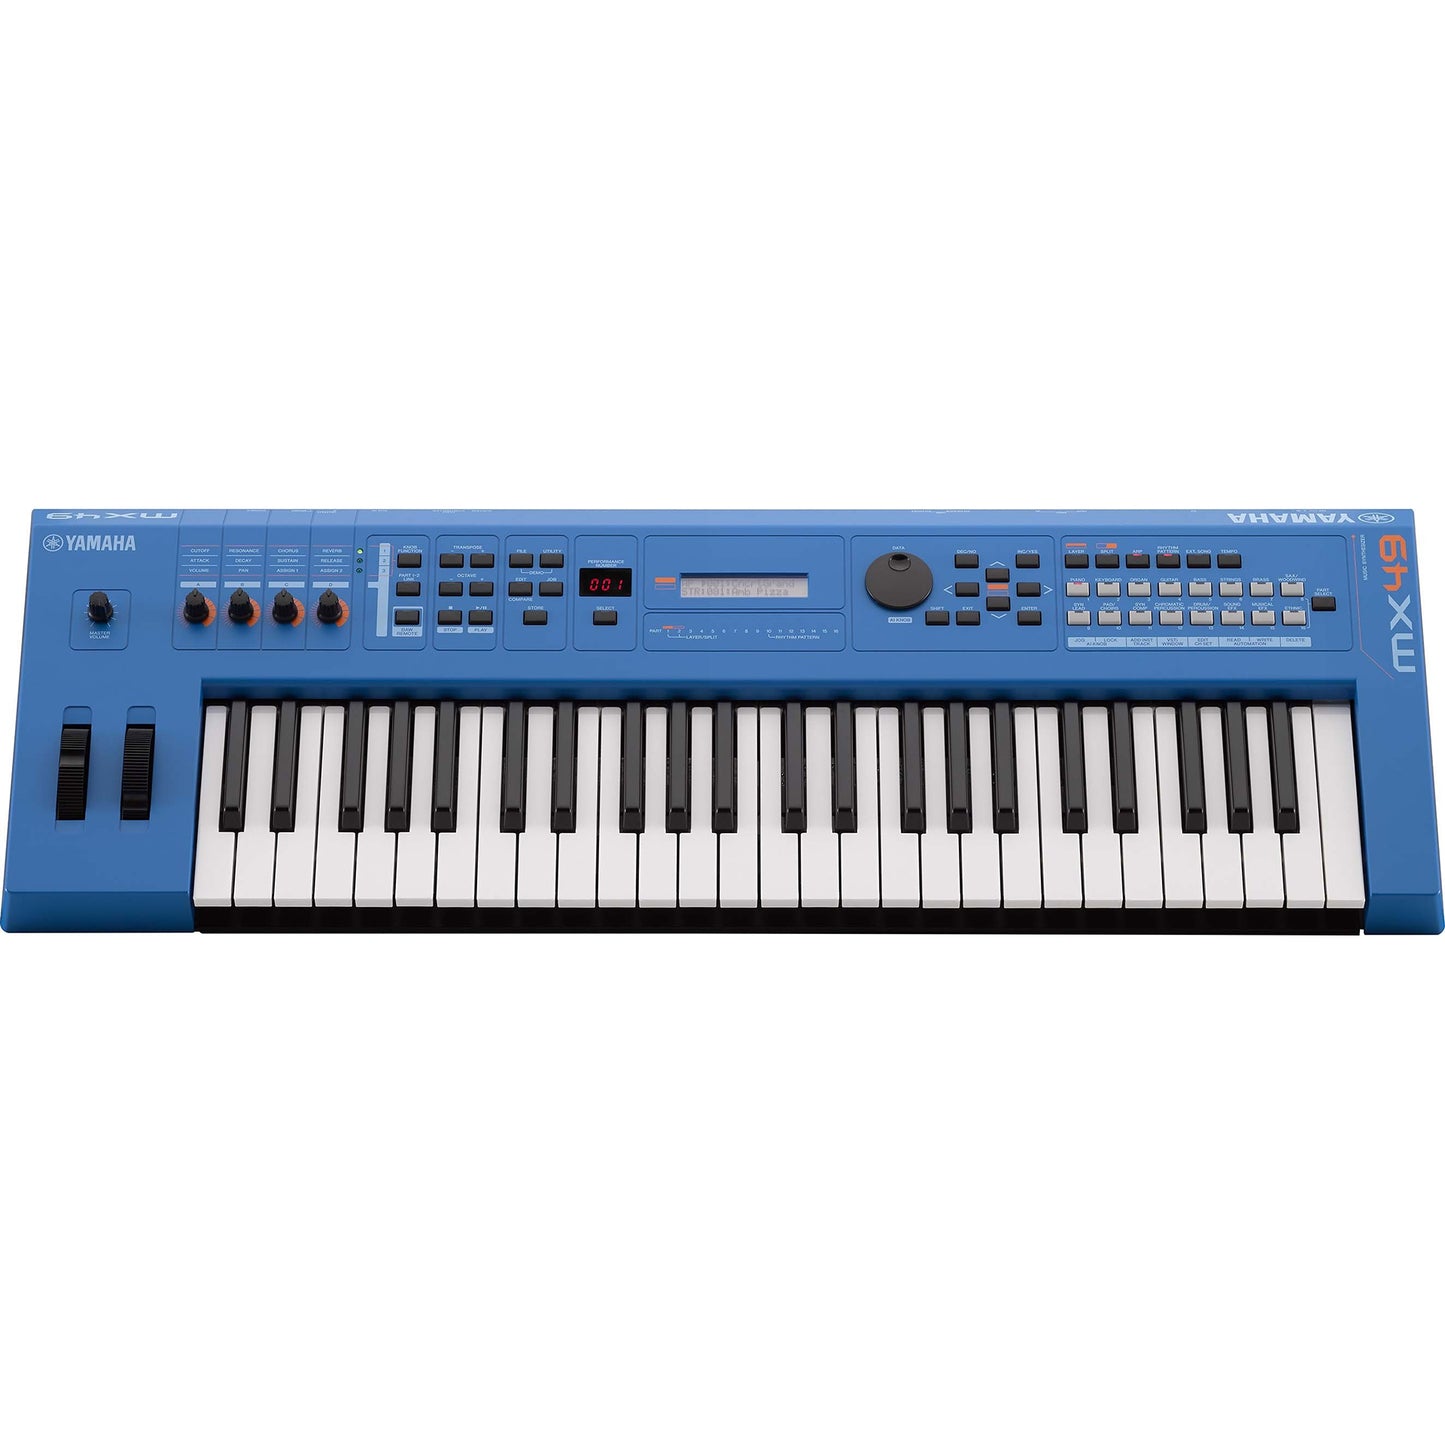 Yamaha MX49 v2 Music Production Synthesizer (Blue)